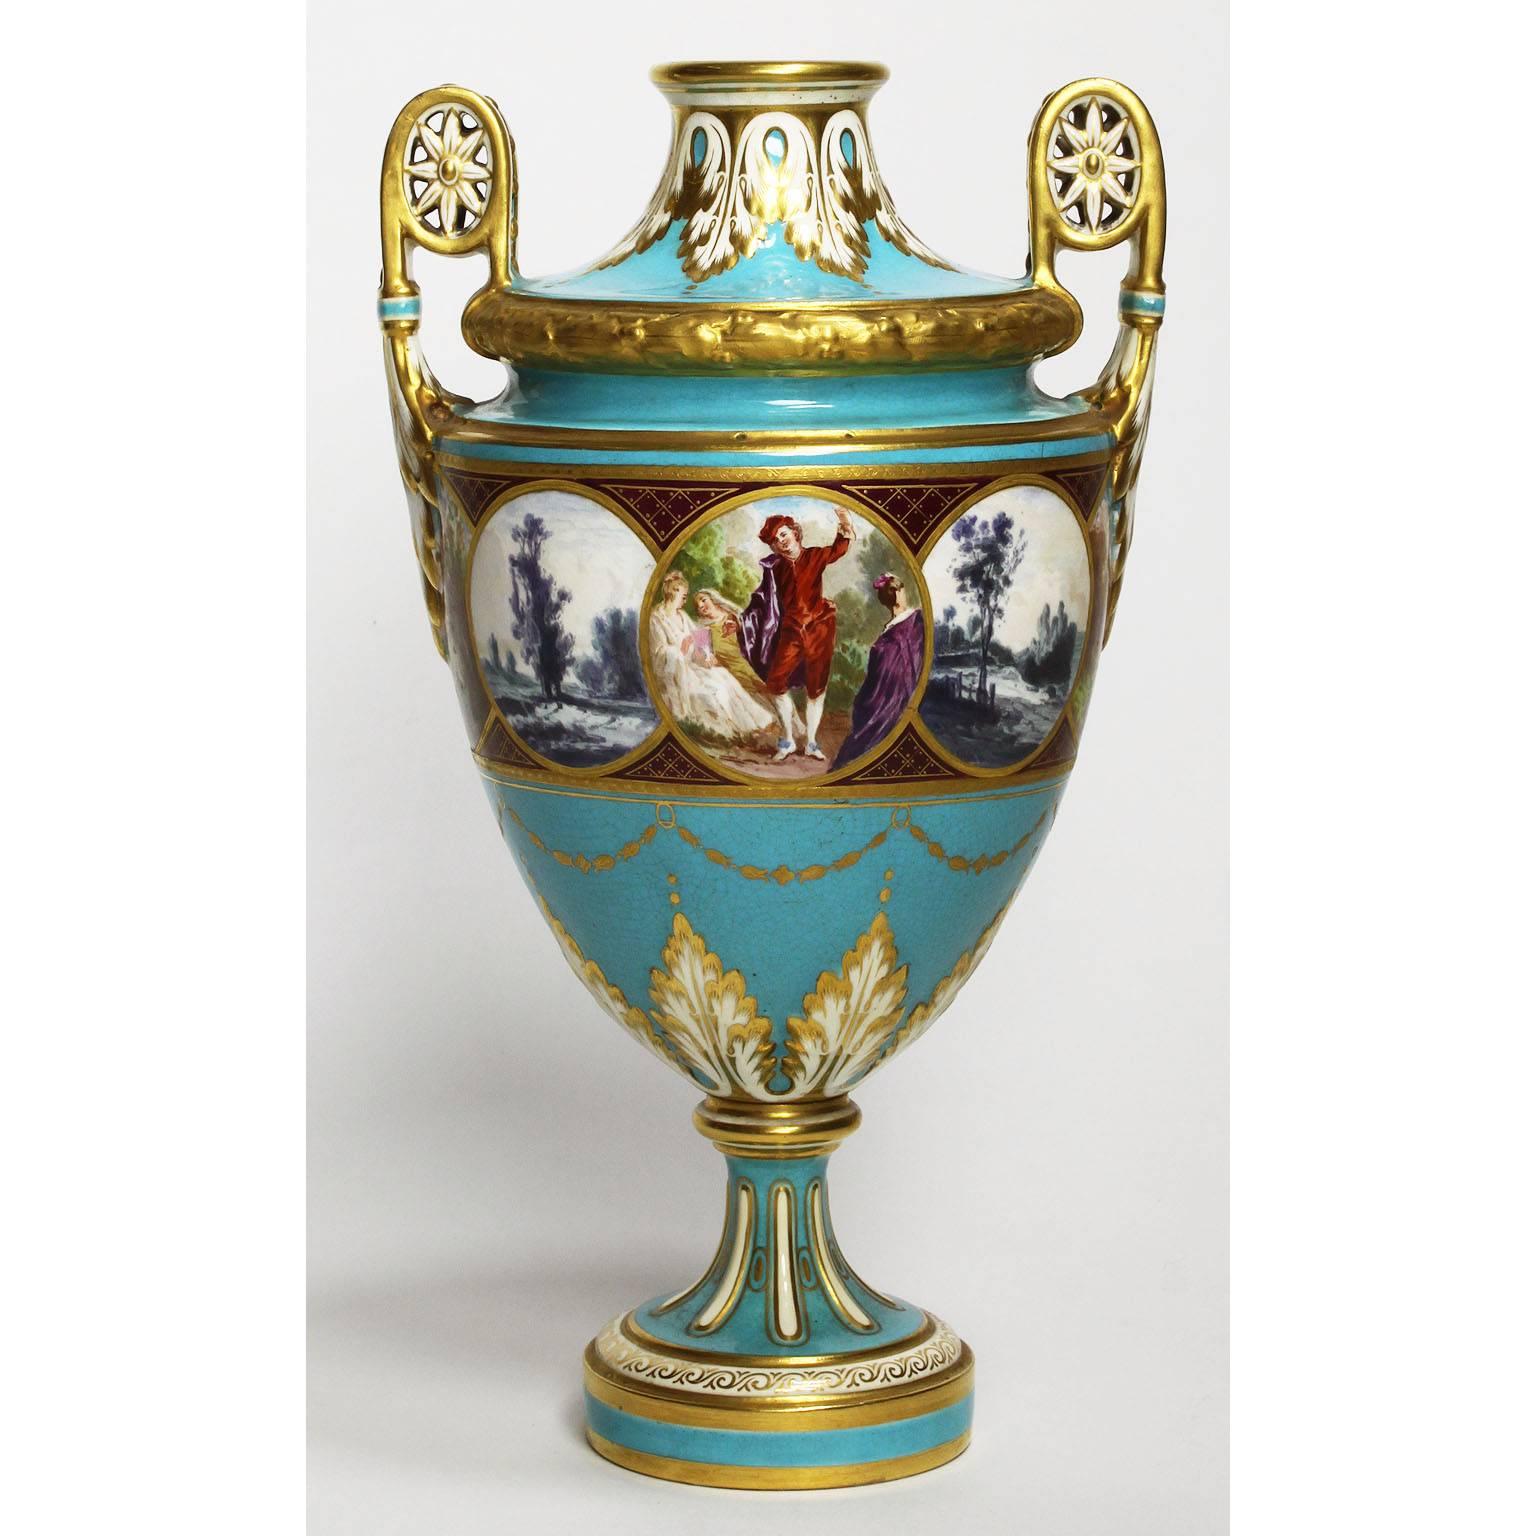 Paire de vases en porcelaine peinte sur fond turquoise et parcheminée du XIXe siècle, urnes par Minton. Les urnes de forme fuselée reposent sur une tige élancée. Les fonds turquoise sont peints de scènes romantiques de jardin et de cour, de